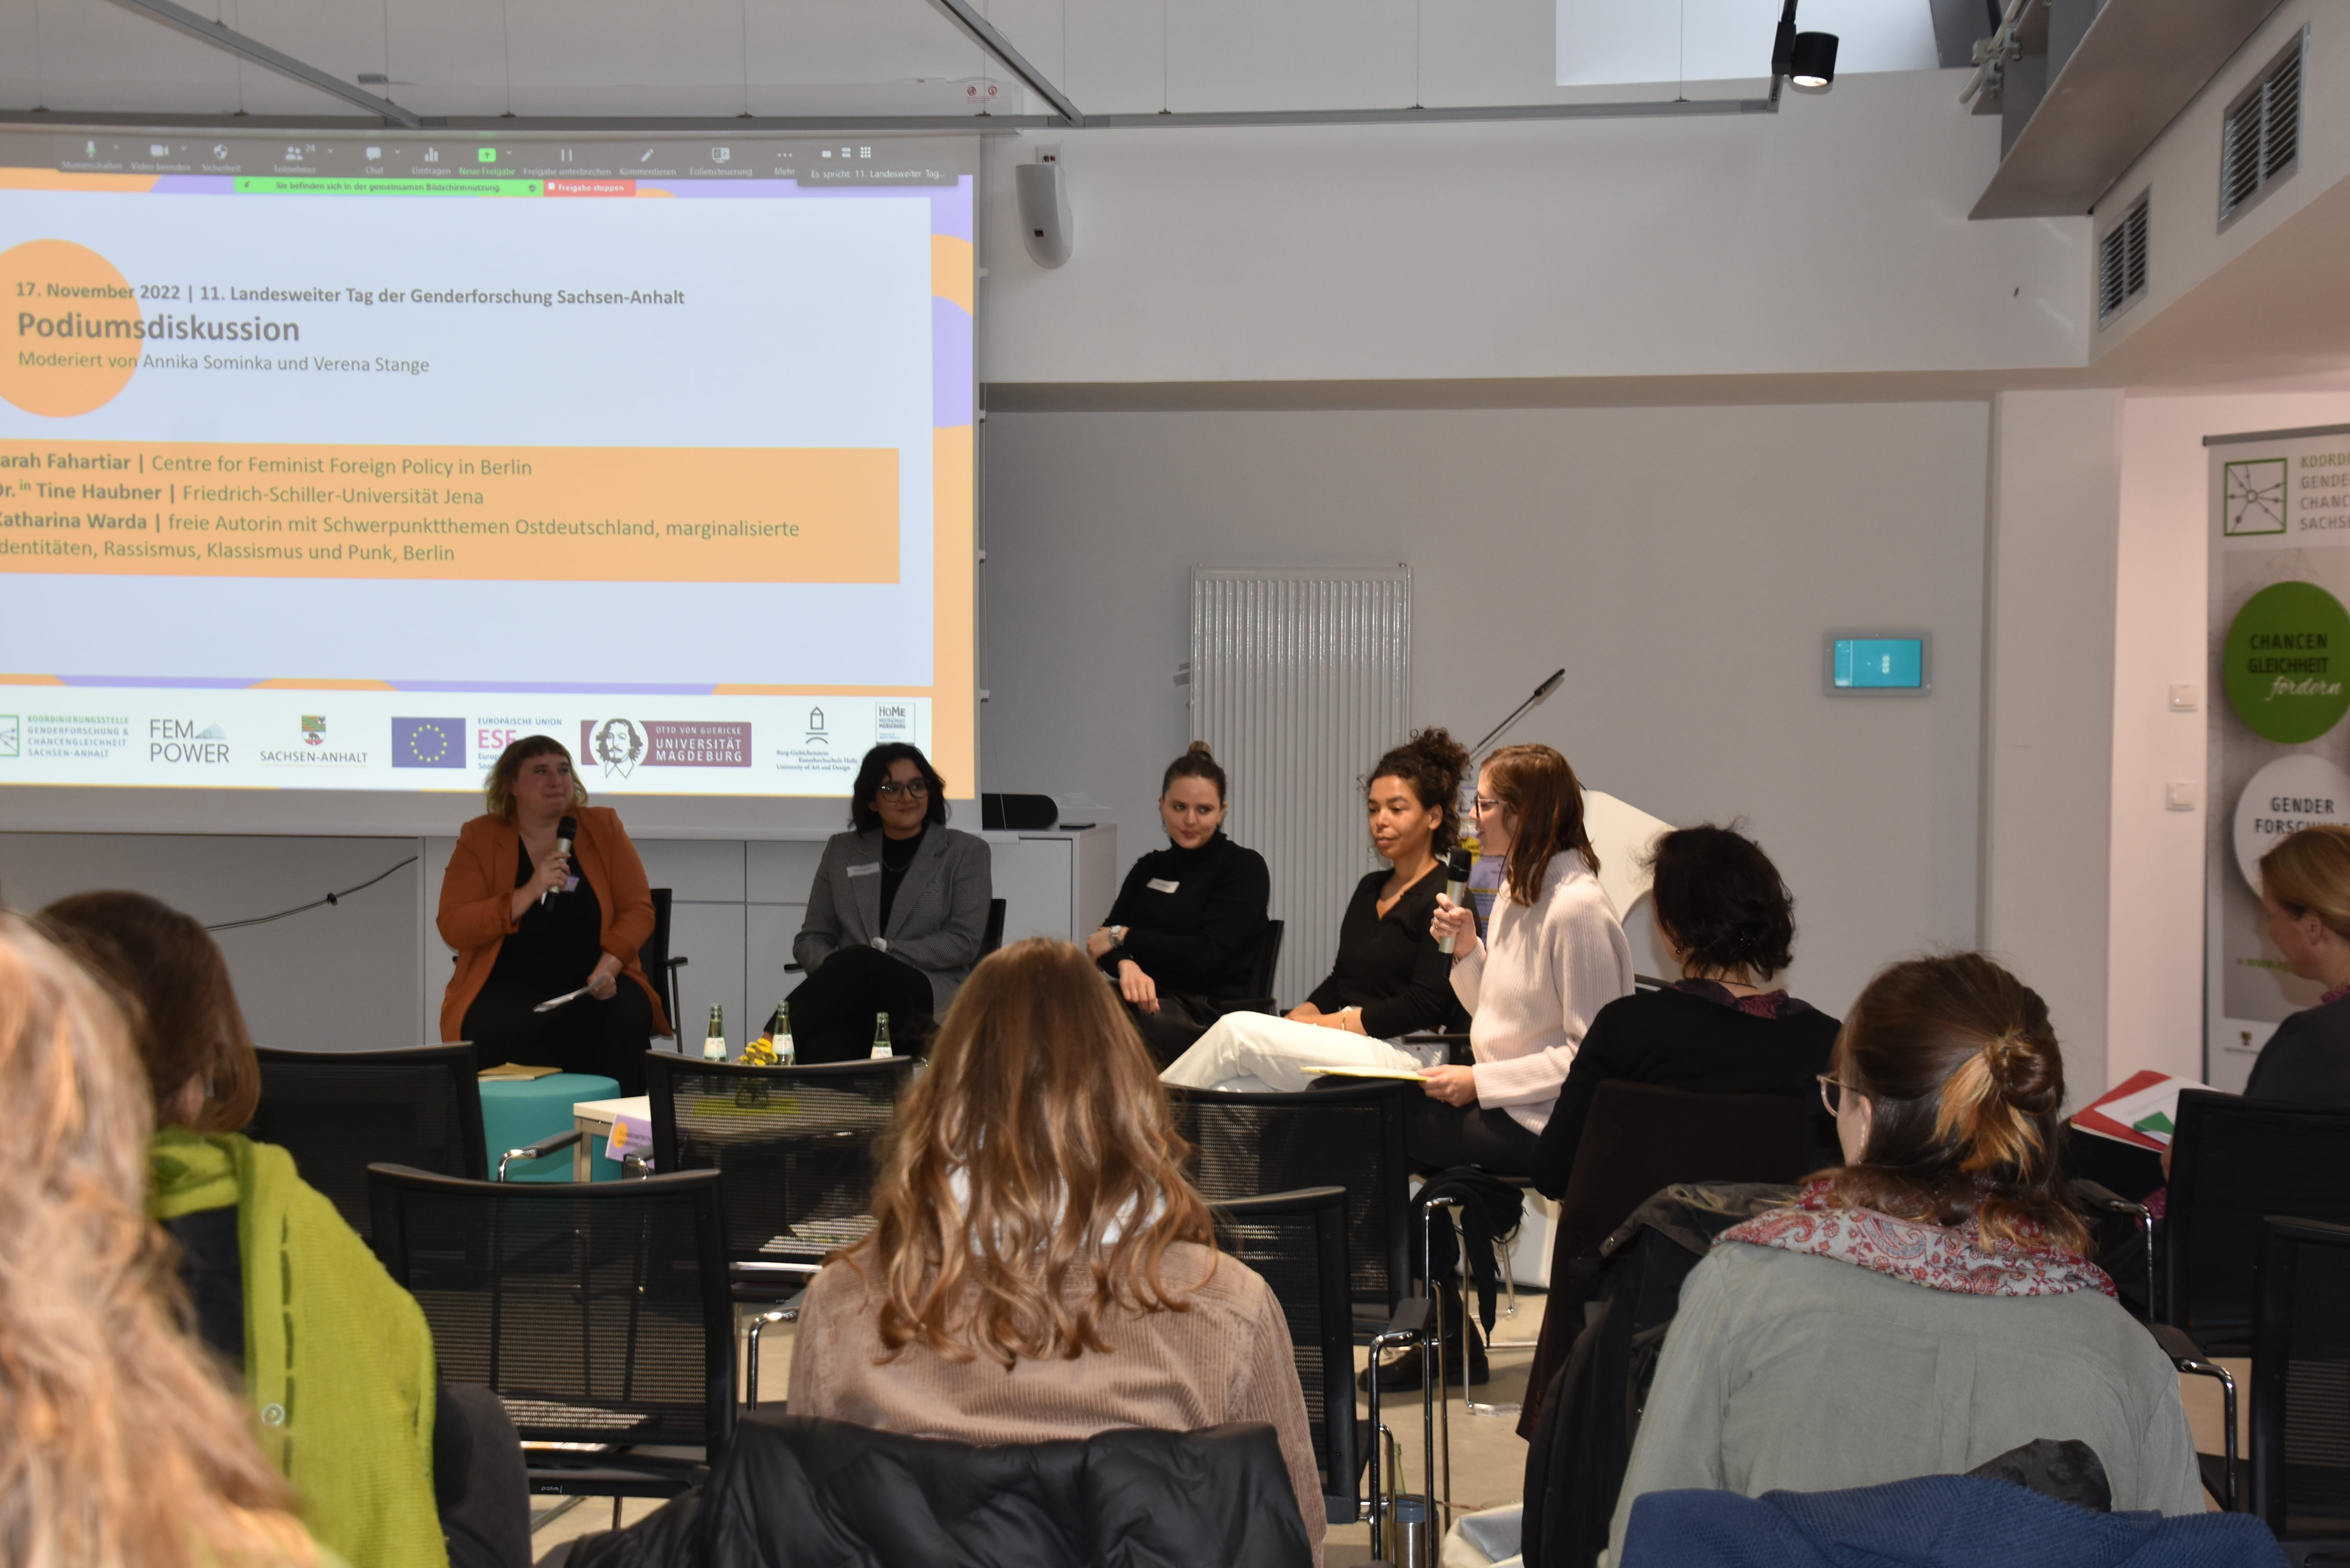 Hybride Podiumsdiskussion über feministische Perspektiven auf Krise (v.l.: Annika Sominka, Sarah Fahartiar, Dr.in Tine Haubner, Katharina Warda und Verena Stange)